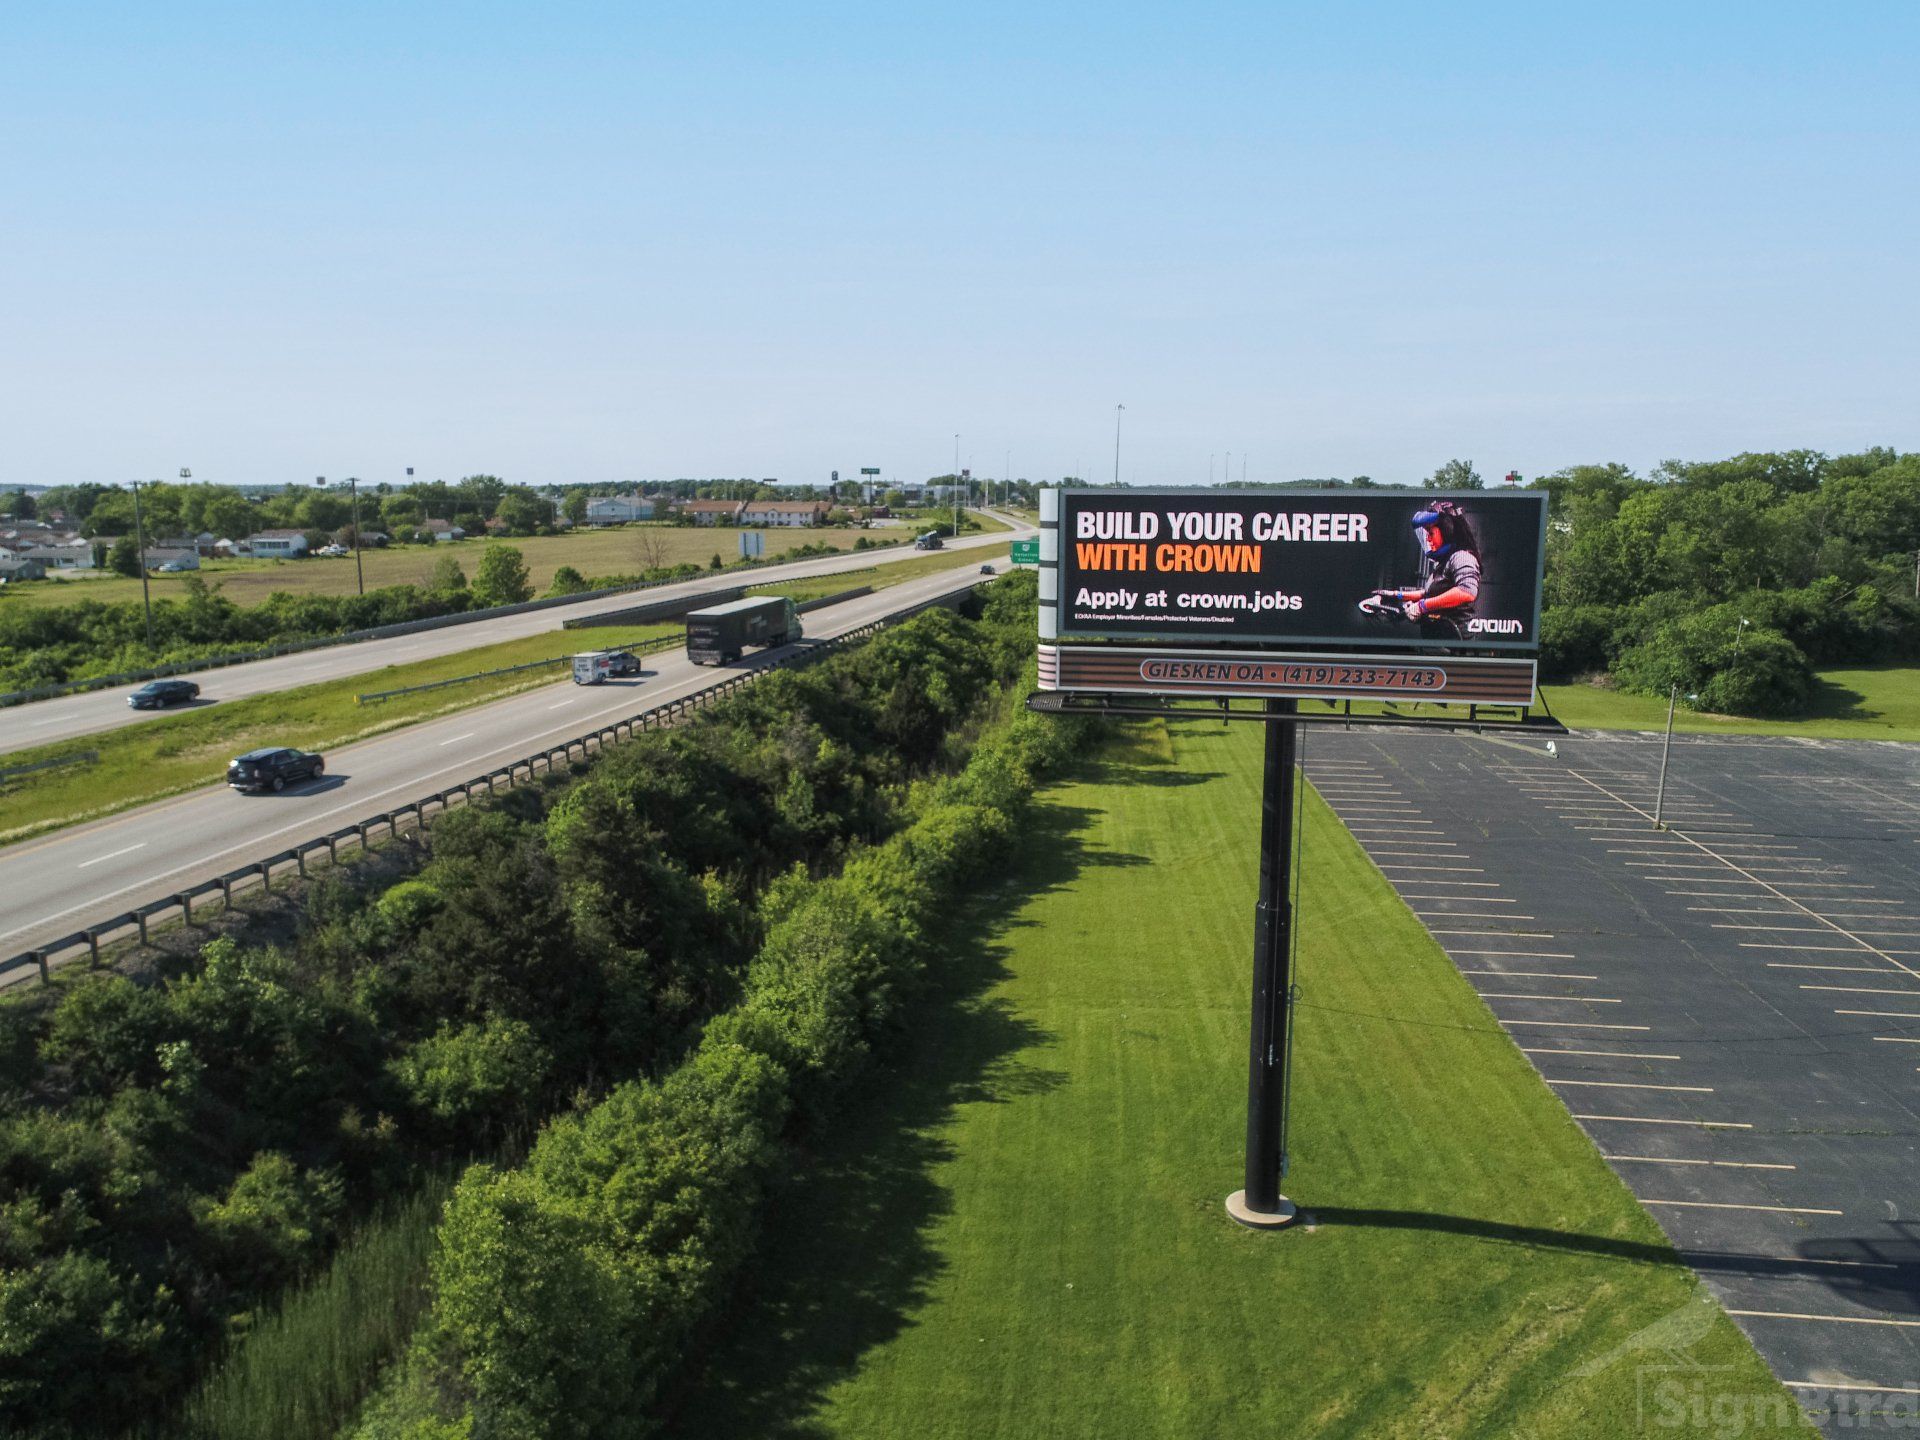 Bluffton, Ohio outdoor advertising on billboards